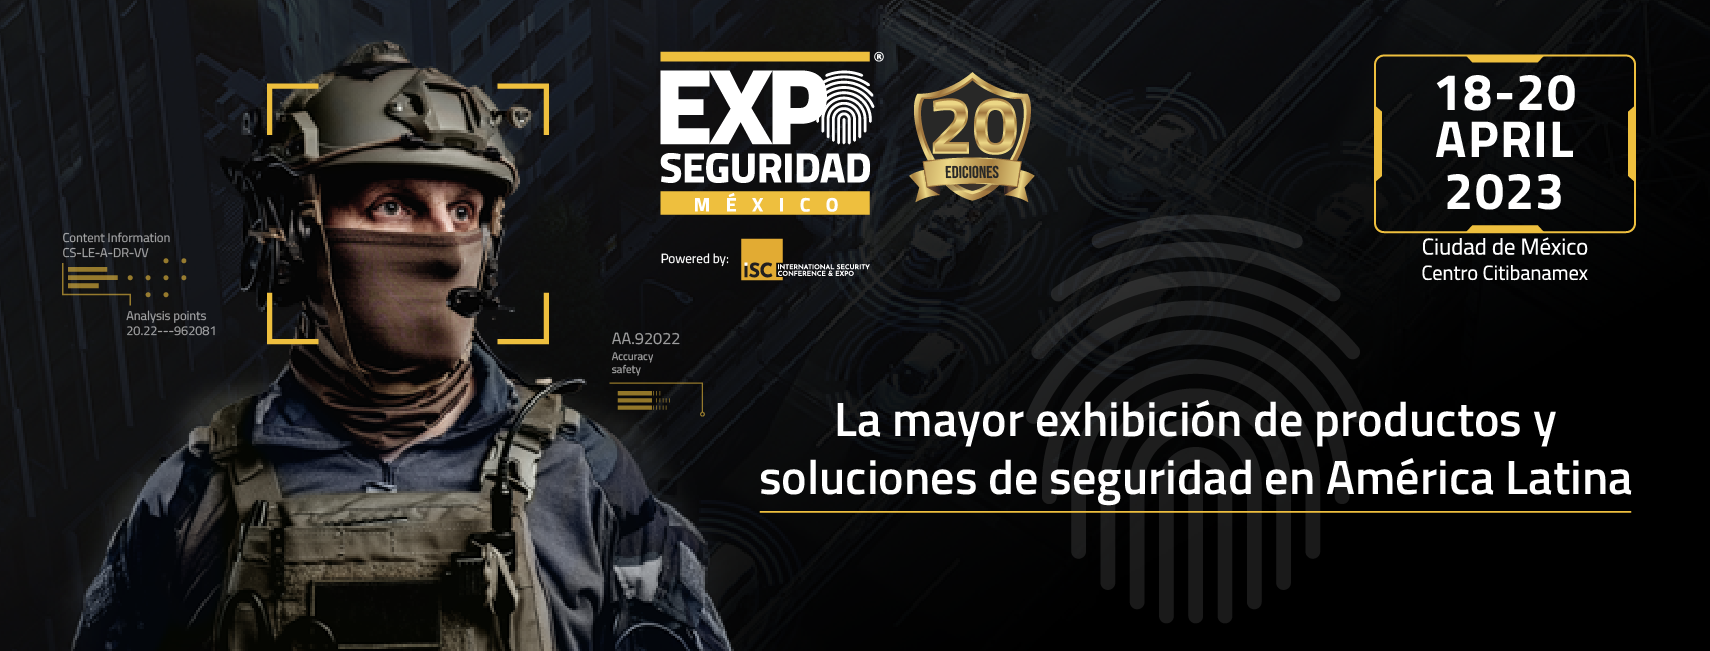 Revista Seguridad 360 te invita a registrarte sin costo en Expo